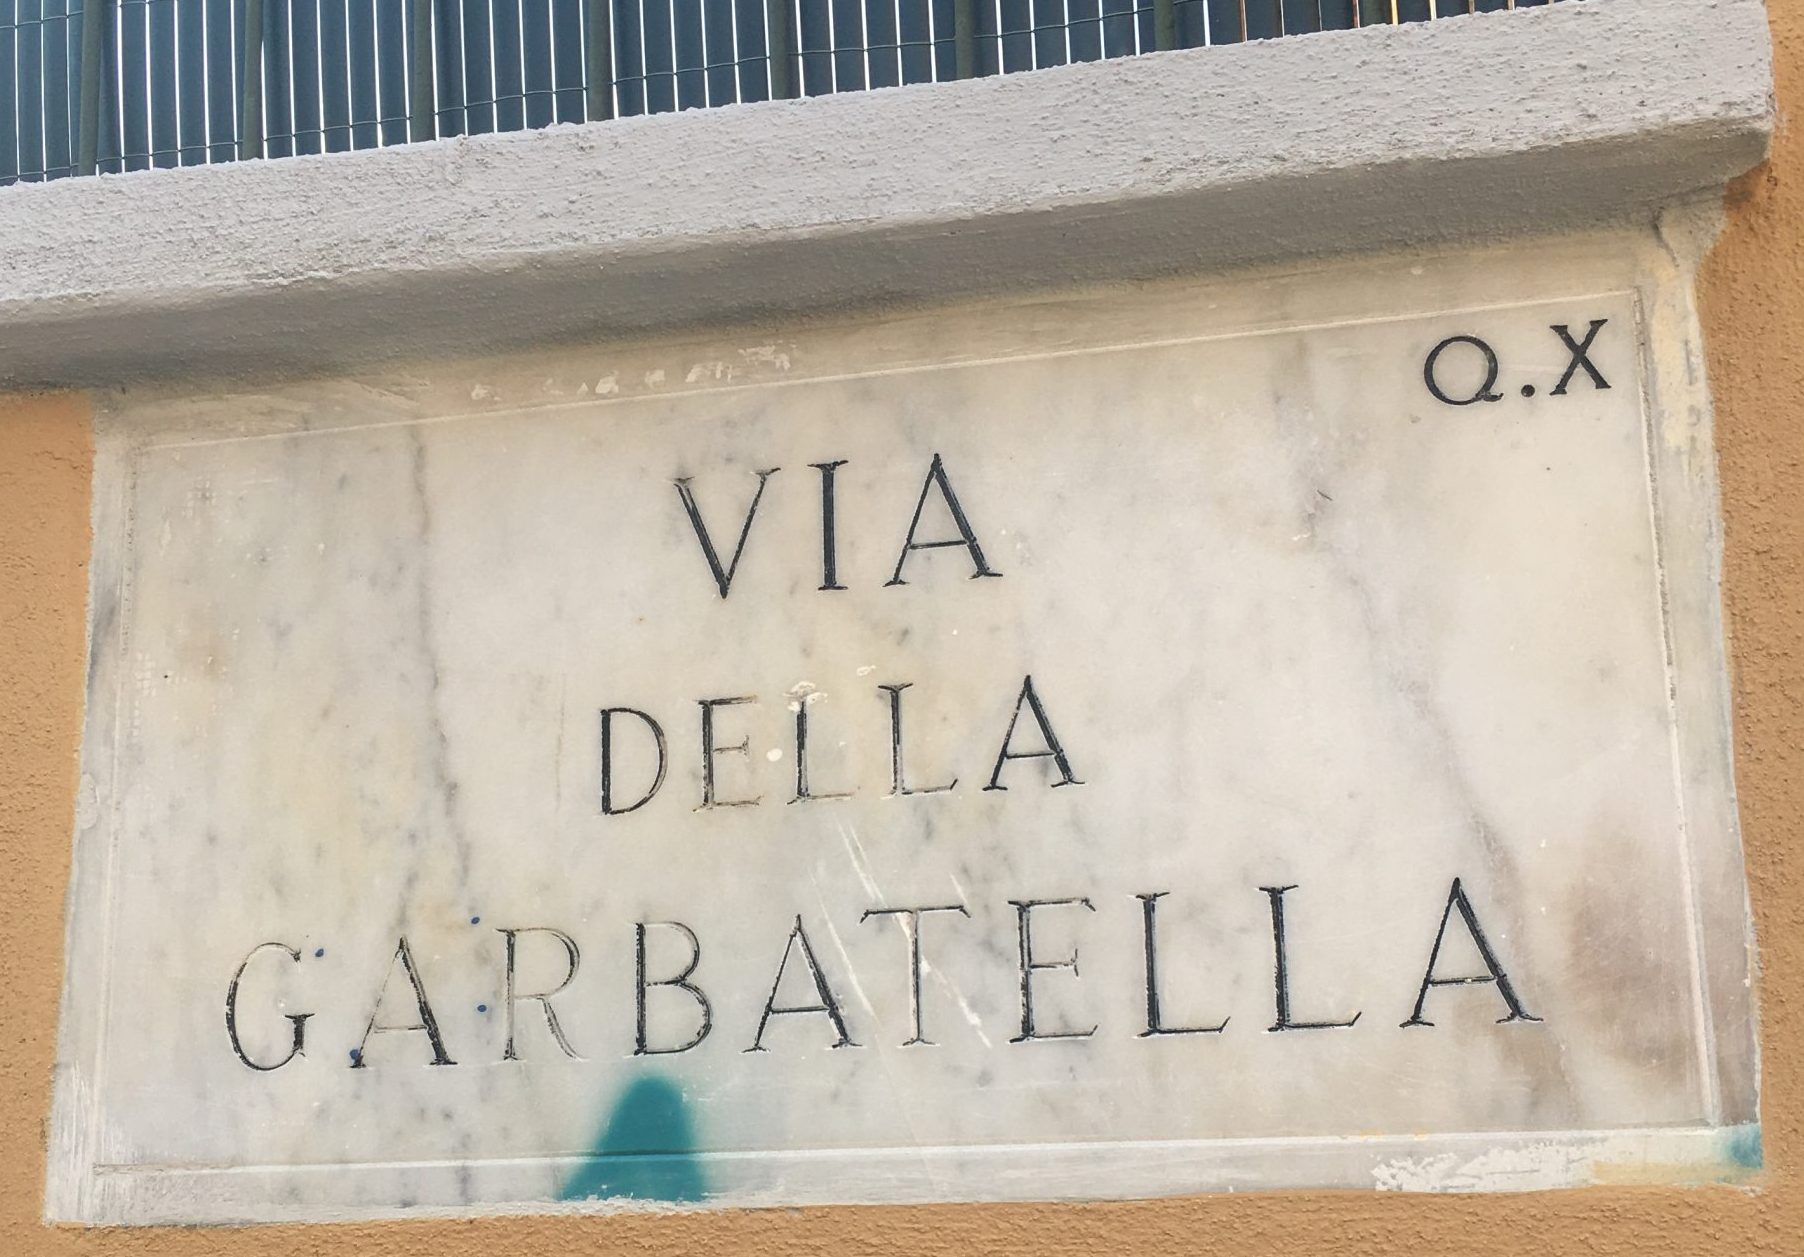 Garbatella: a fashinating diversion